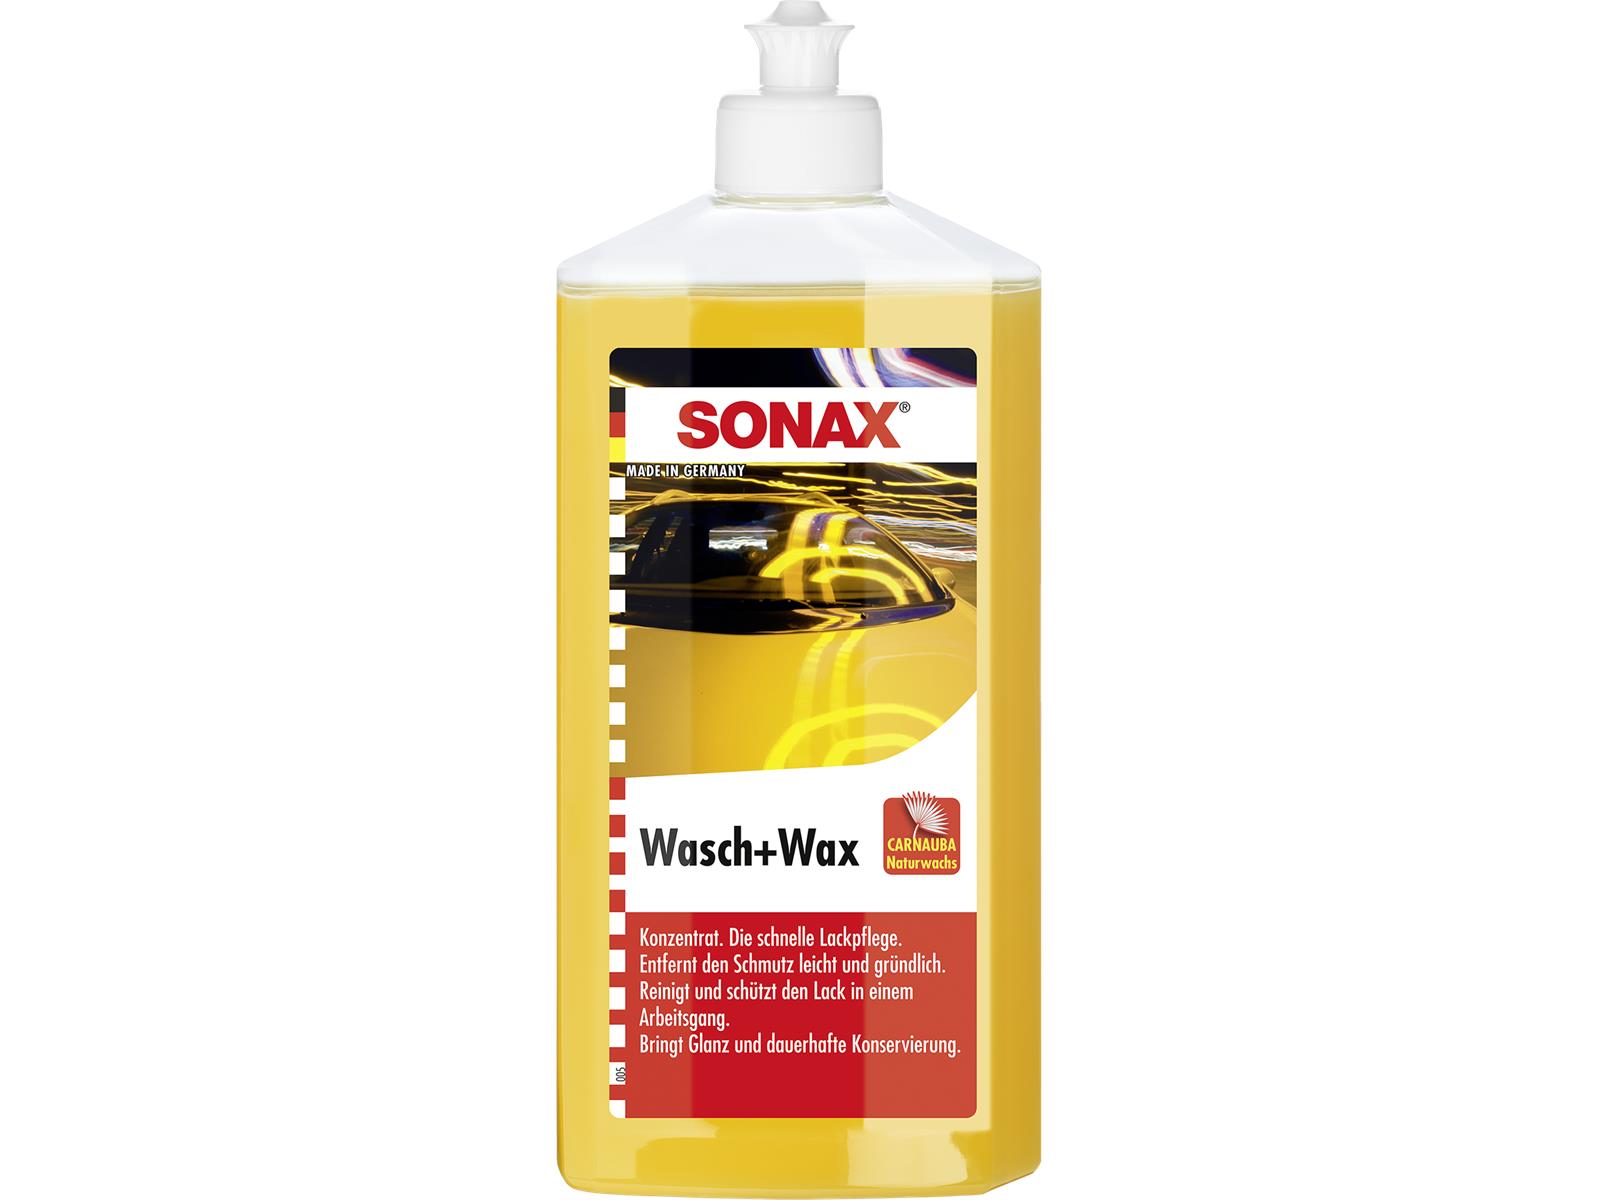 SONAX 03132000 Wasch+Wax 500 ml